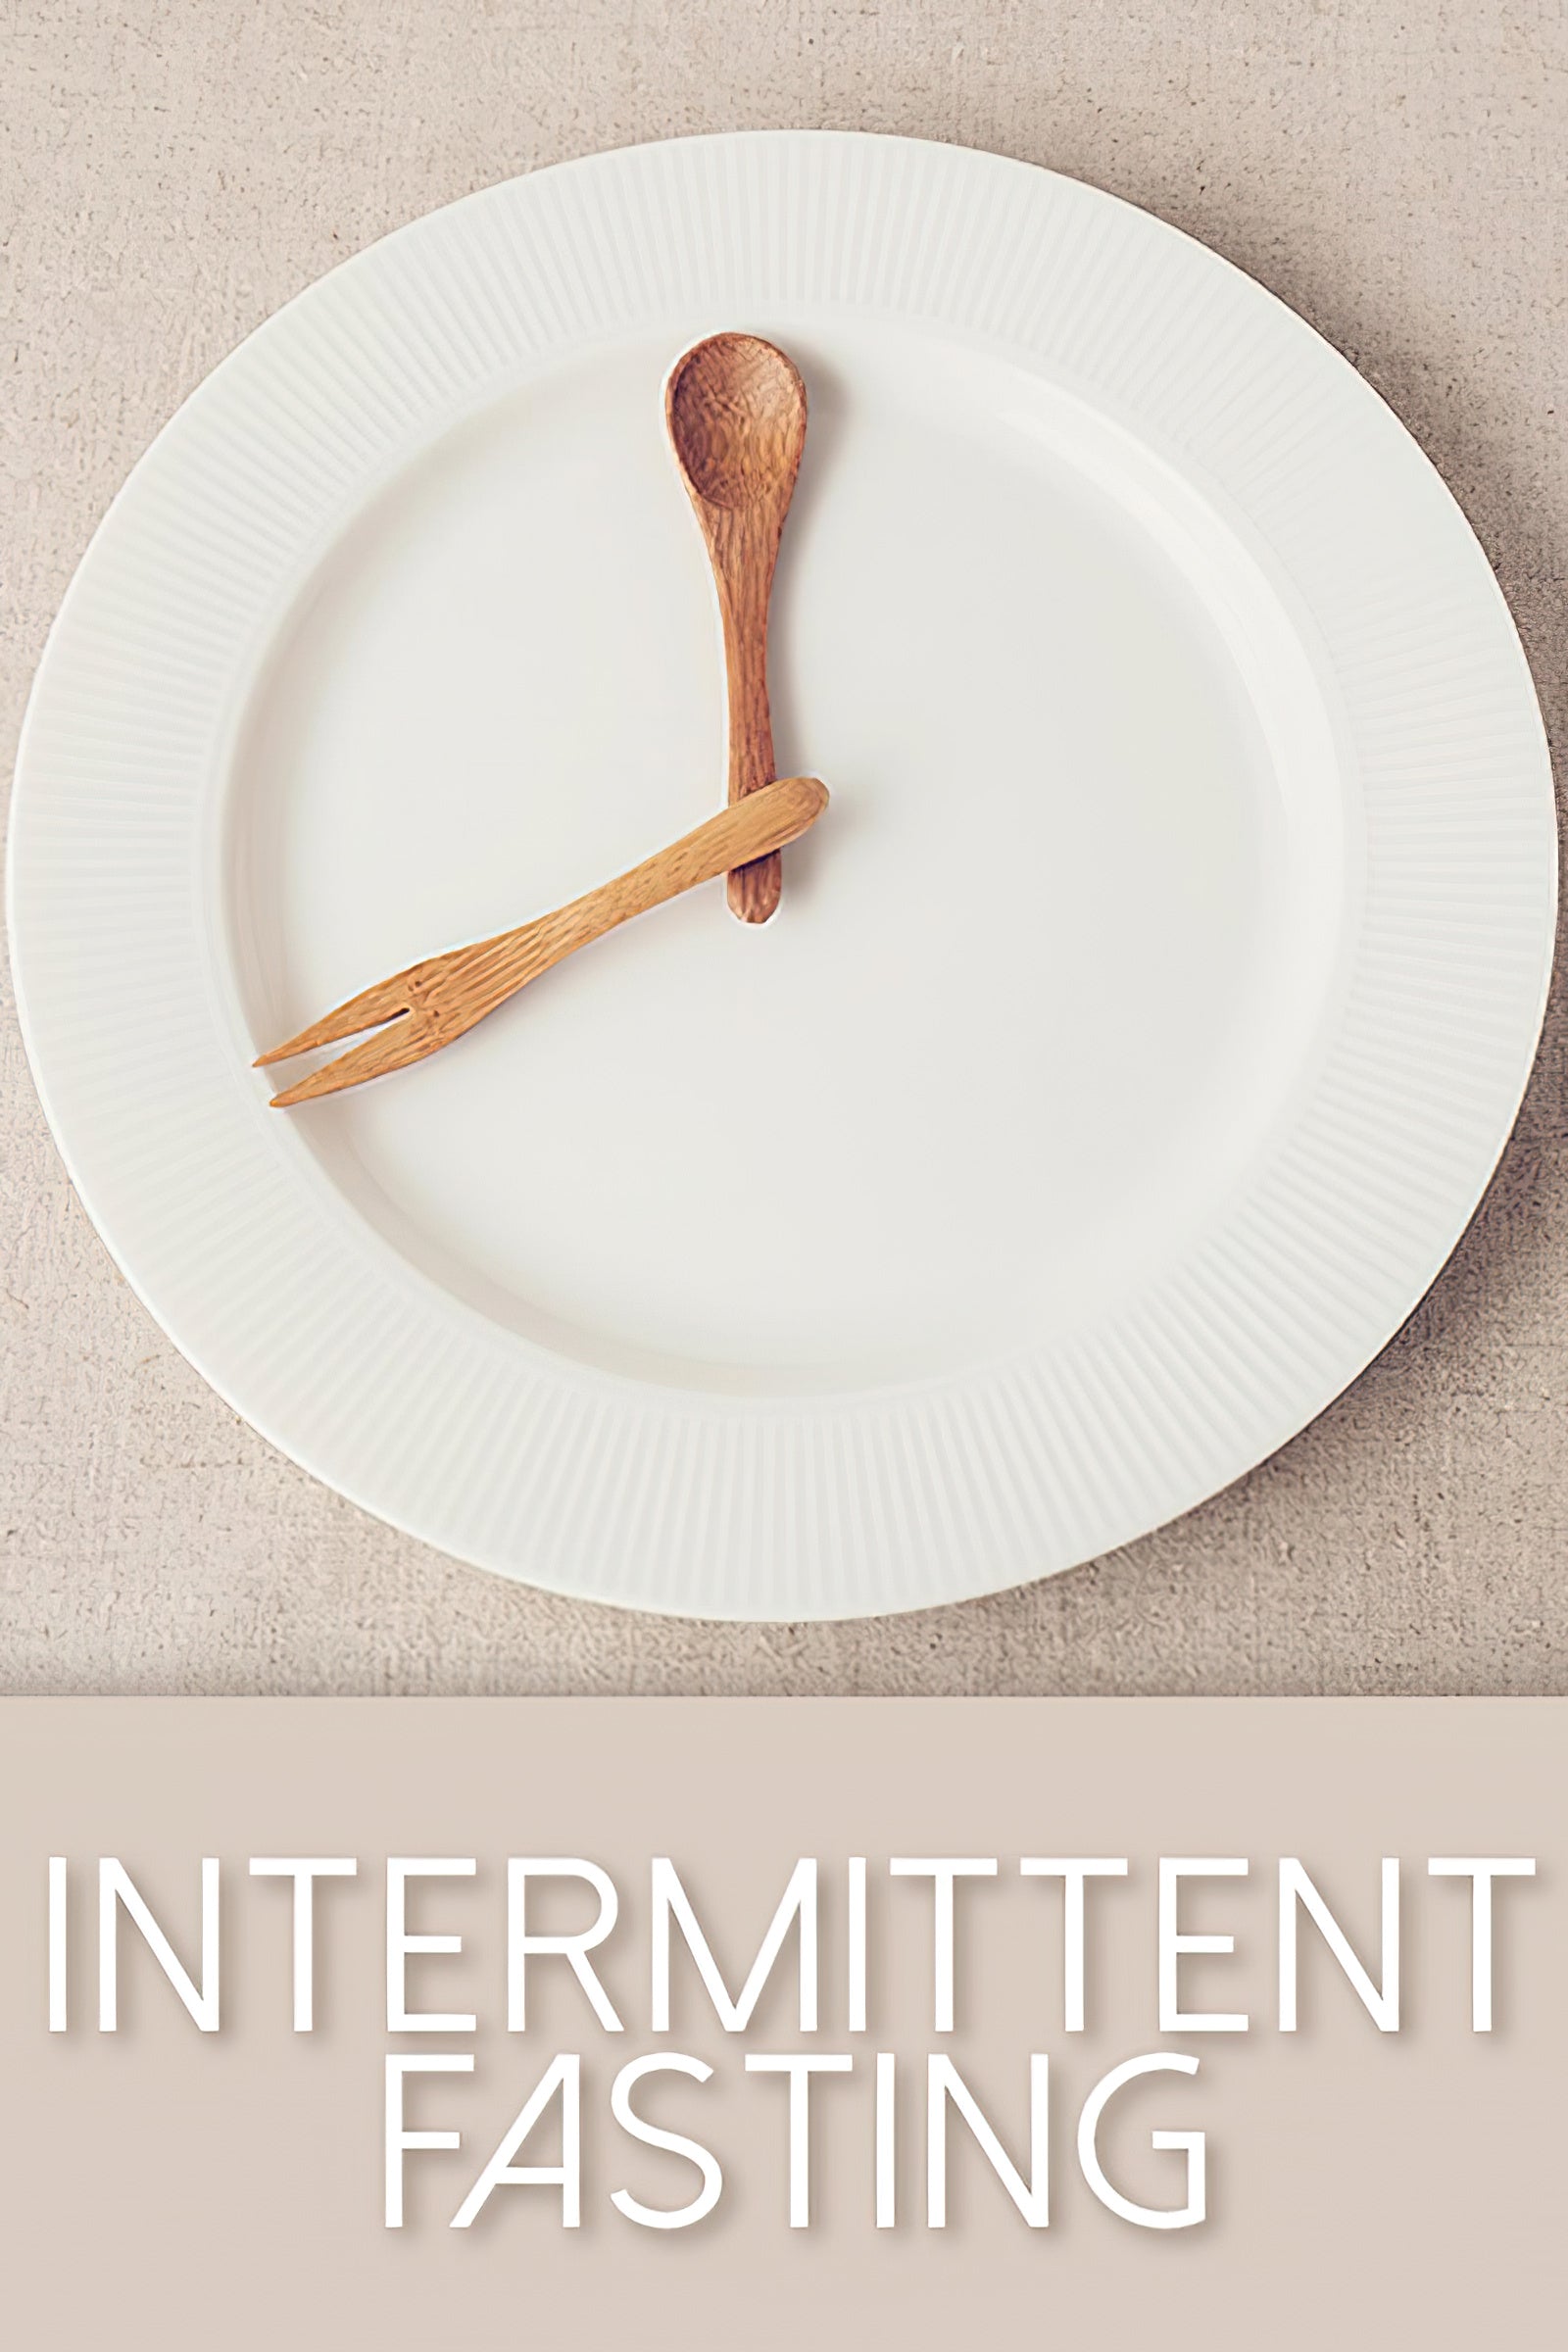 Ein Einblick in Intermittent Fasting